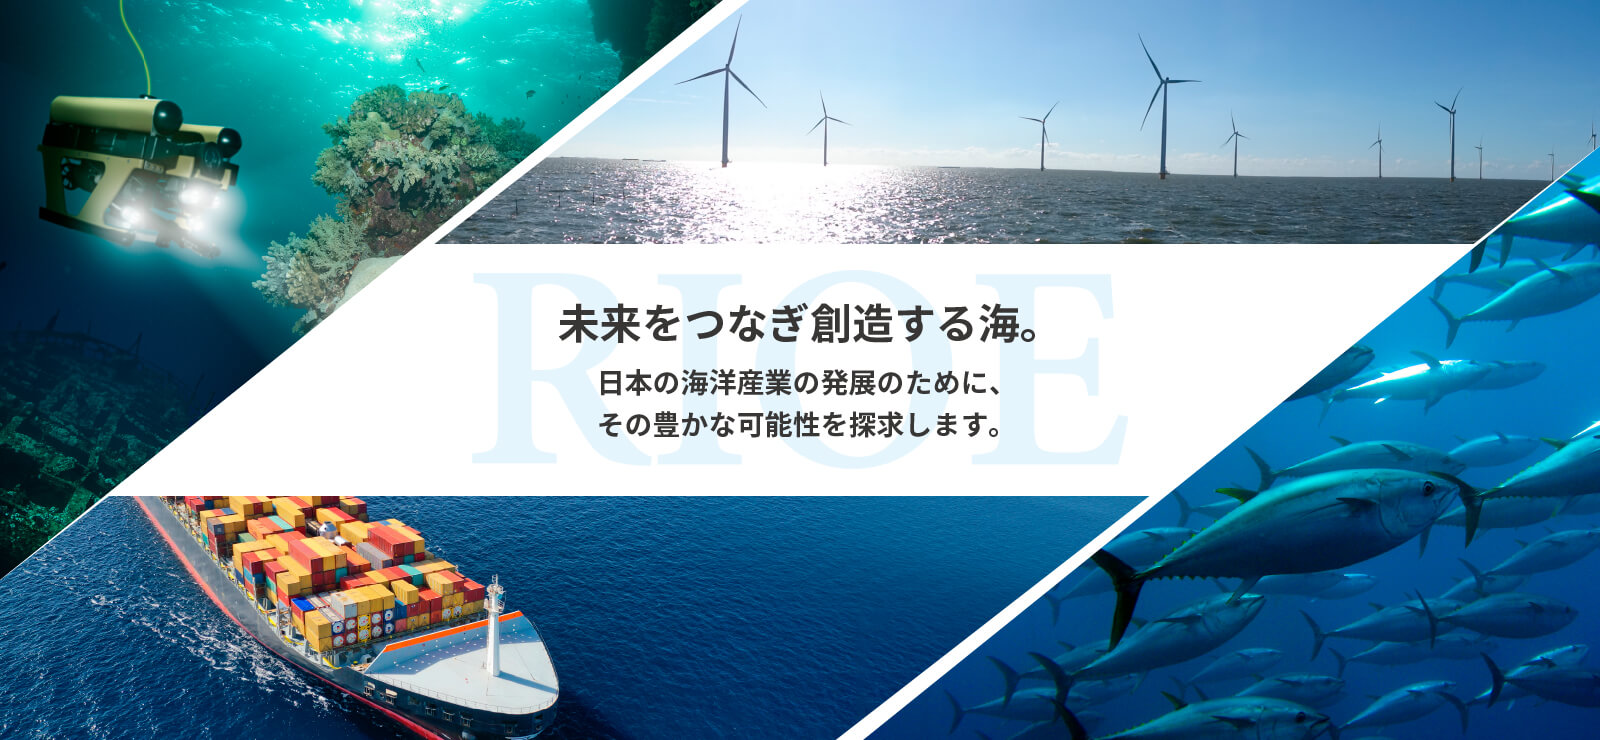 未来をつなぎ創造する海。日本の海洋産業の発展のために、その豊かな可能性を探求します。